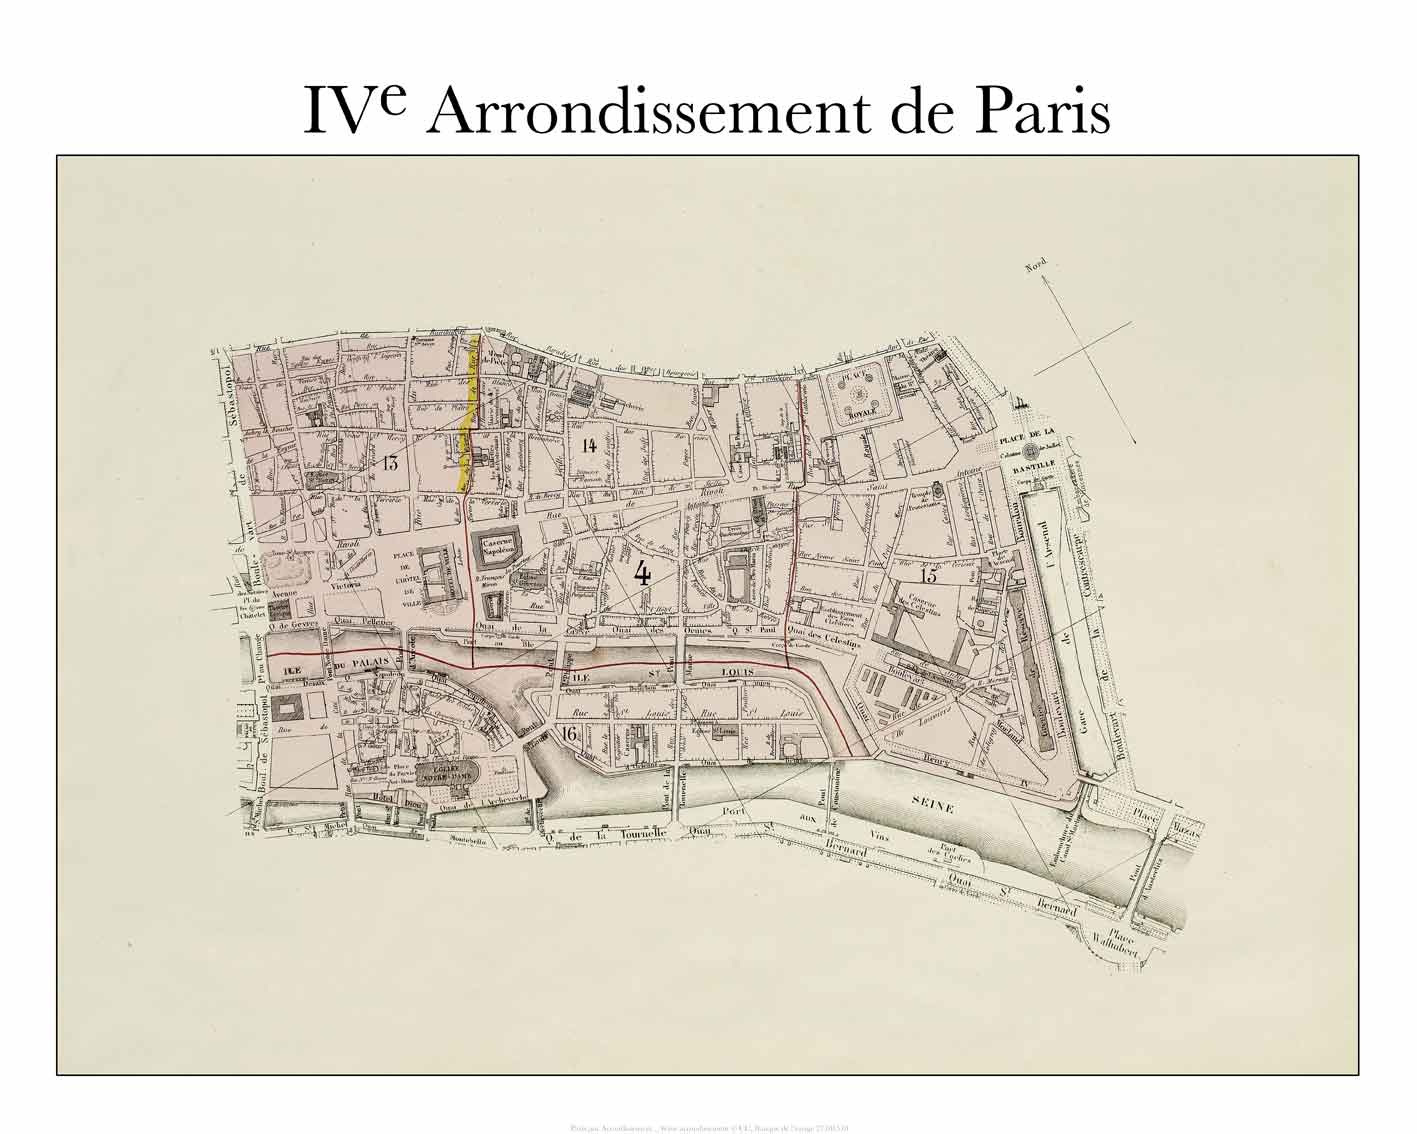 Paris - IV Arrondissement